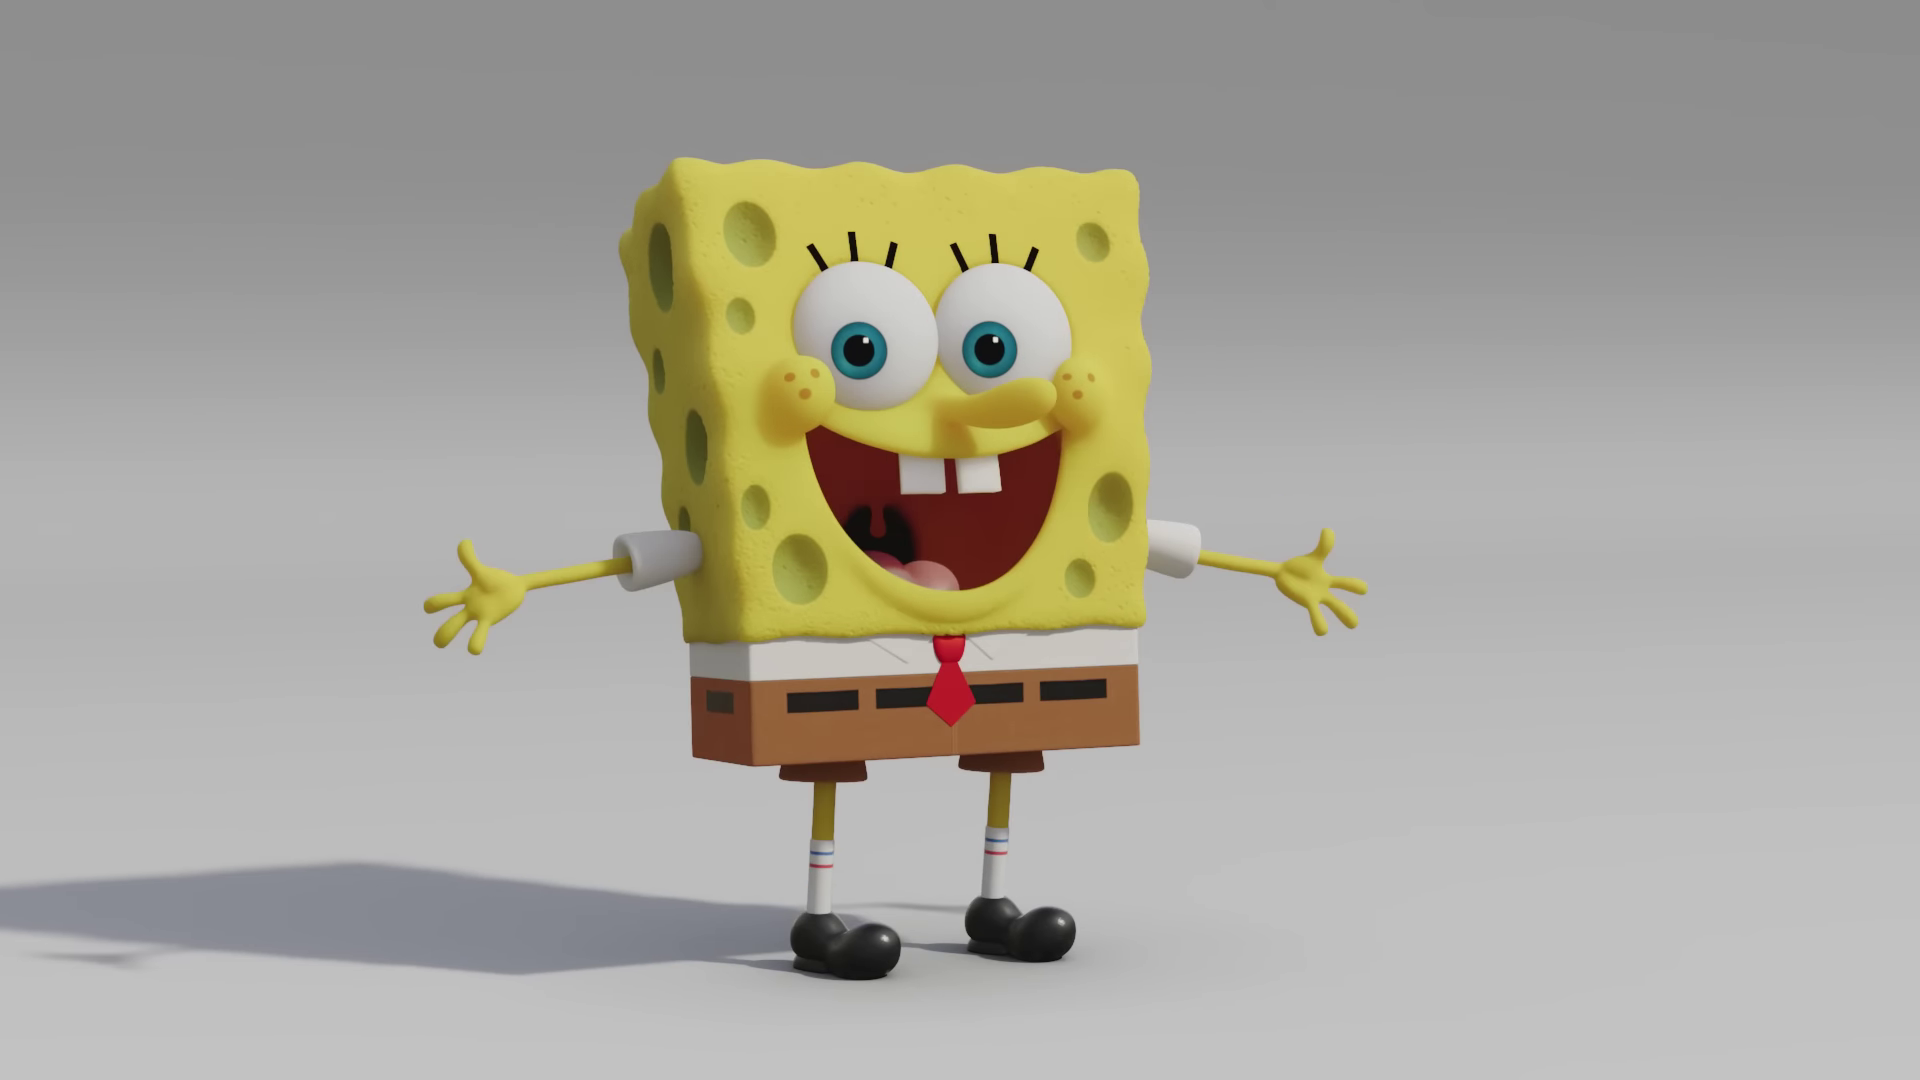 a cartoon character of a spongebob squarepants